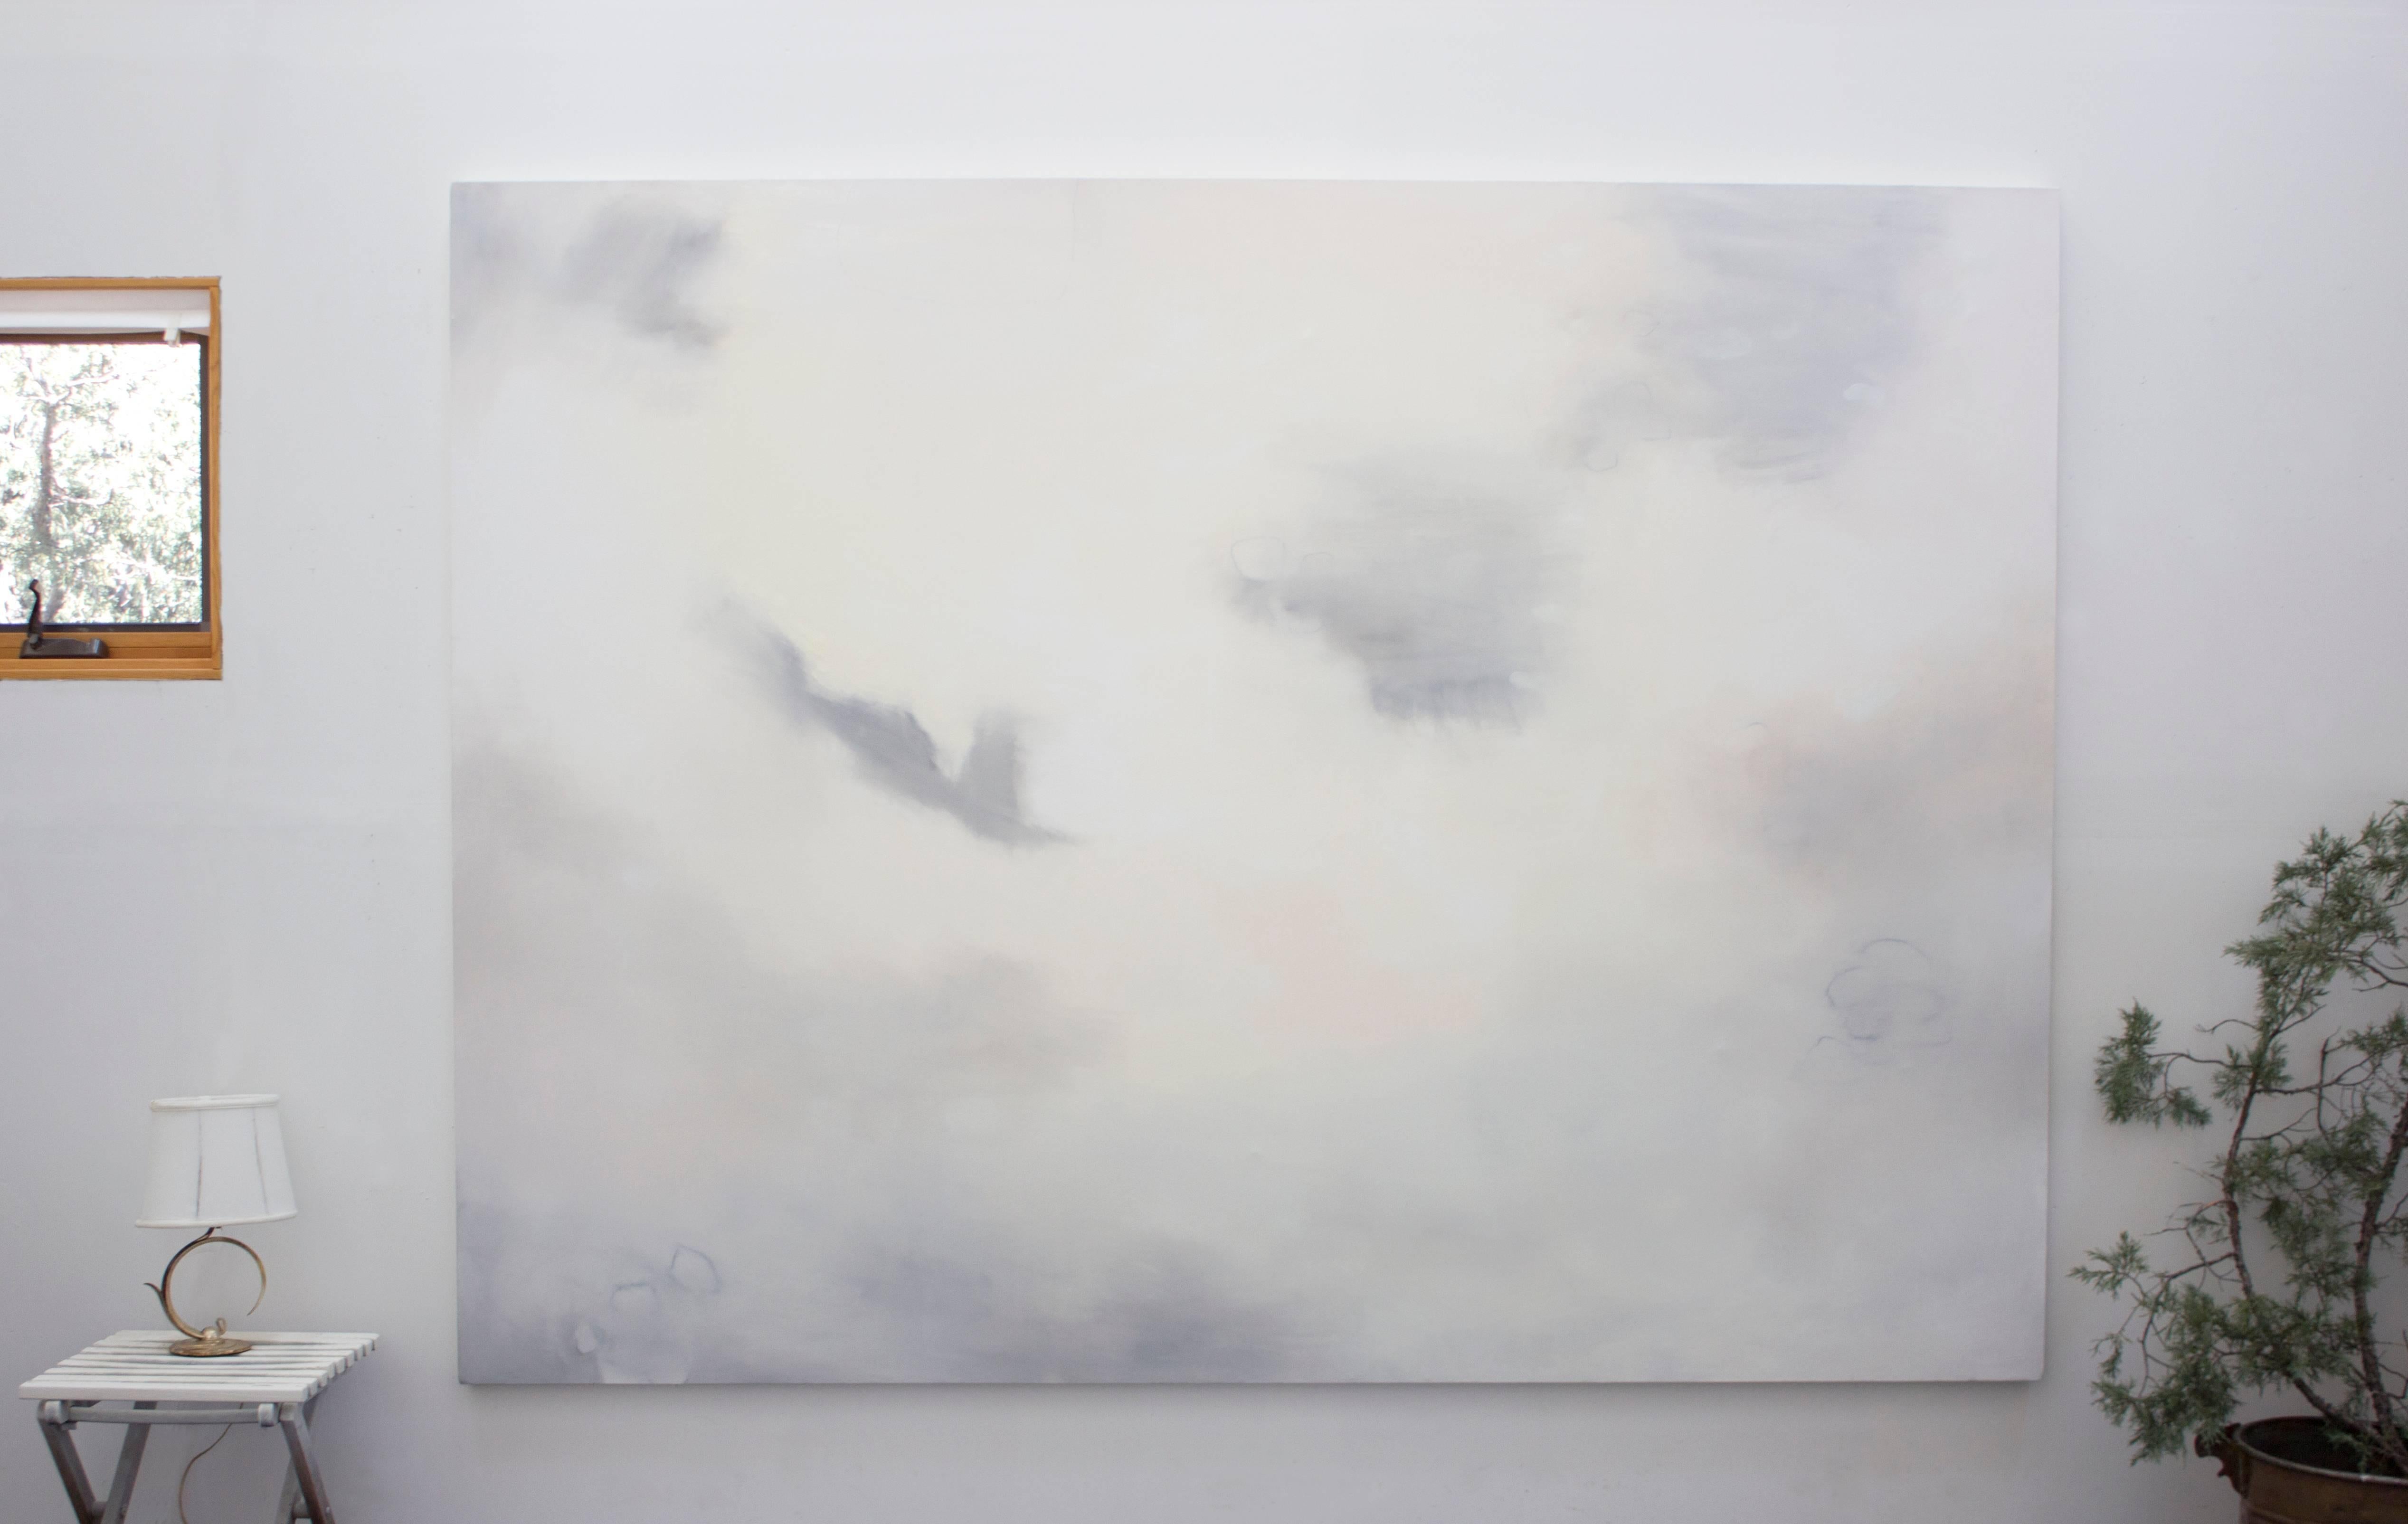 Sophie Dixon Landscape Painting – Esche/Tablett  72 x 96 Zoll - Öl auf Leinwand - ruhige Gelassenheit